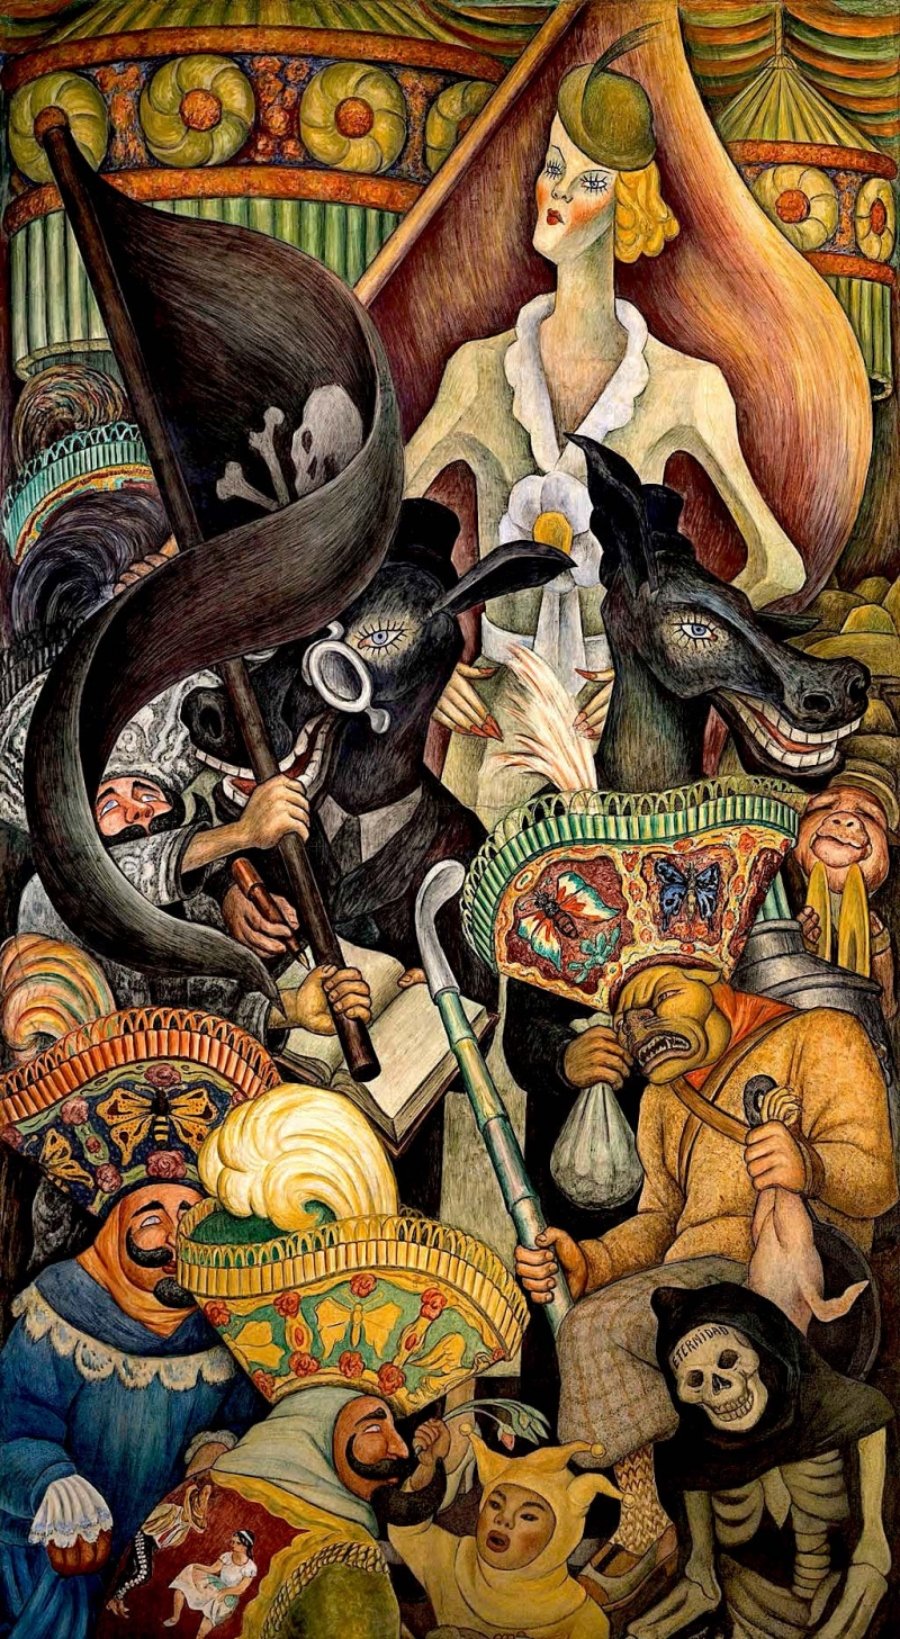 México folklórico y turístico; pintura con personajes coloridos: una mujer rubia son sombrero  y mejillas coloradas tiene las manos sobre la cintura mientras mira una escena de personas con sombrero y hombres  con cabeza de caballo  que sostienen un libro